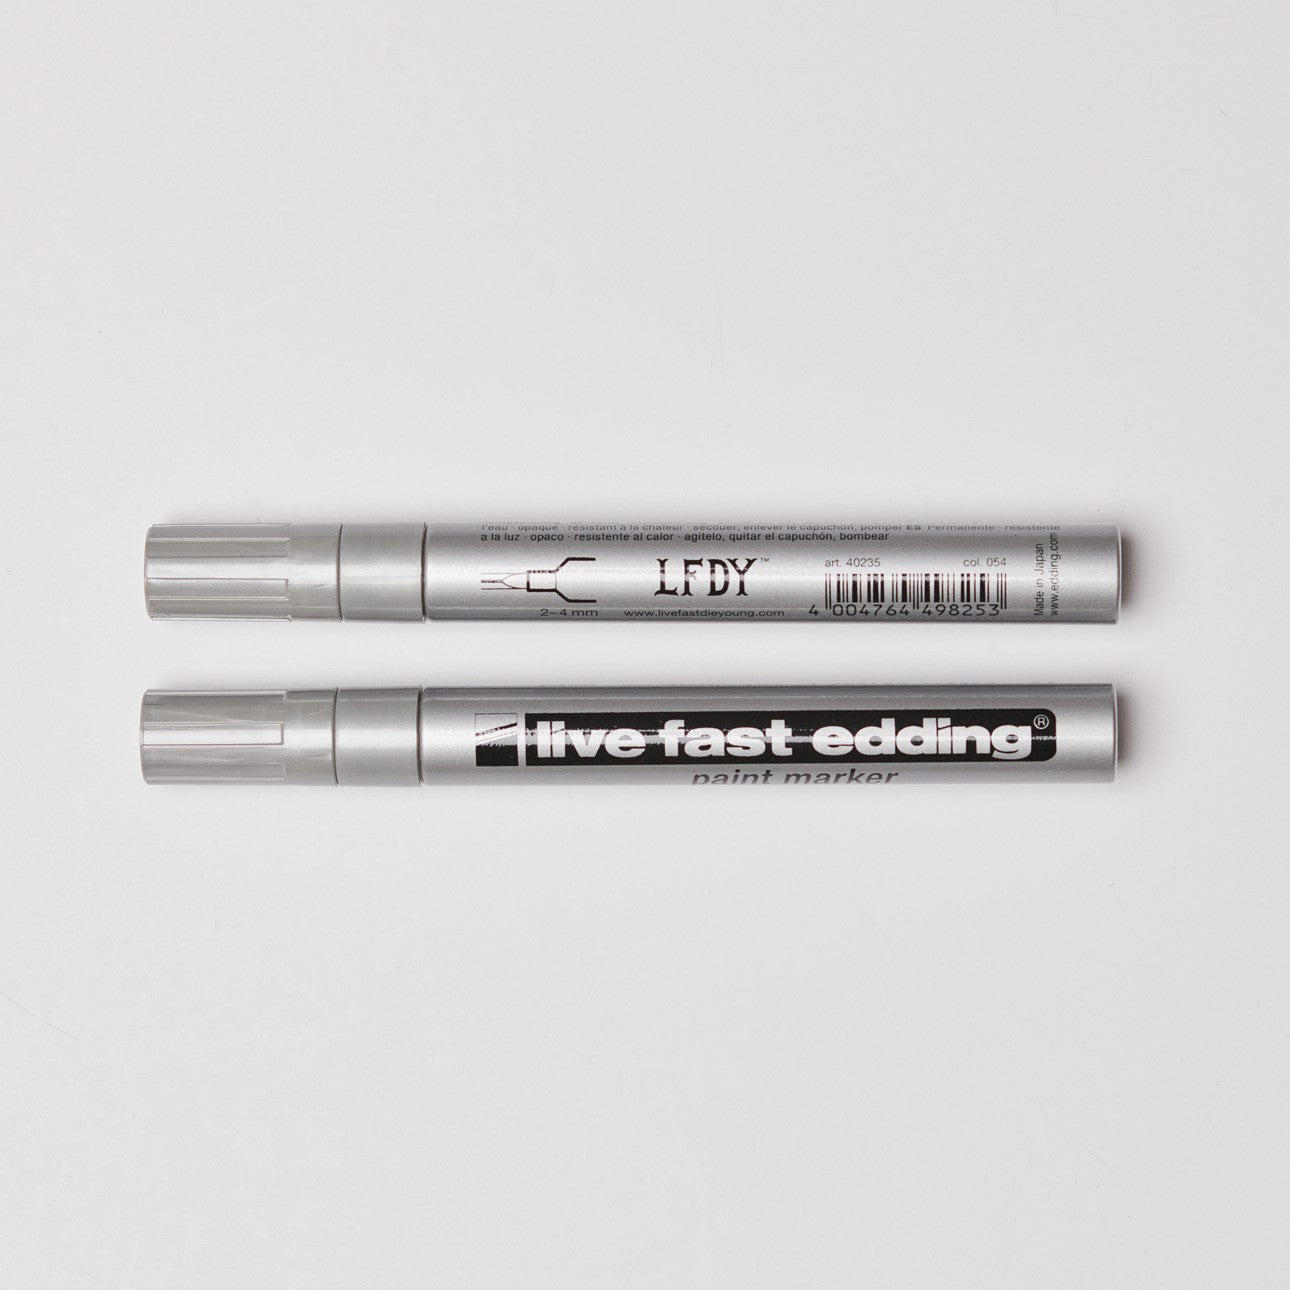 Zwei edding LFDY Lackmarker - Live Fast edding Silberlackmarker liegen horizontal auf weißem Untergrund. Auf einem Marker steht „LFDY x edding“, auf dem anderen „live fast edding“.